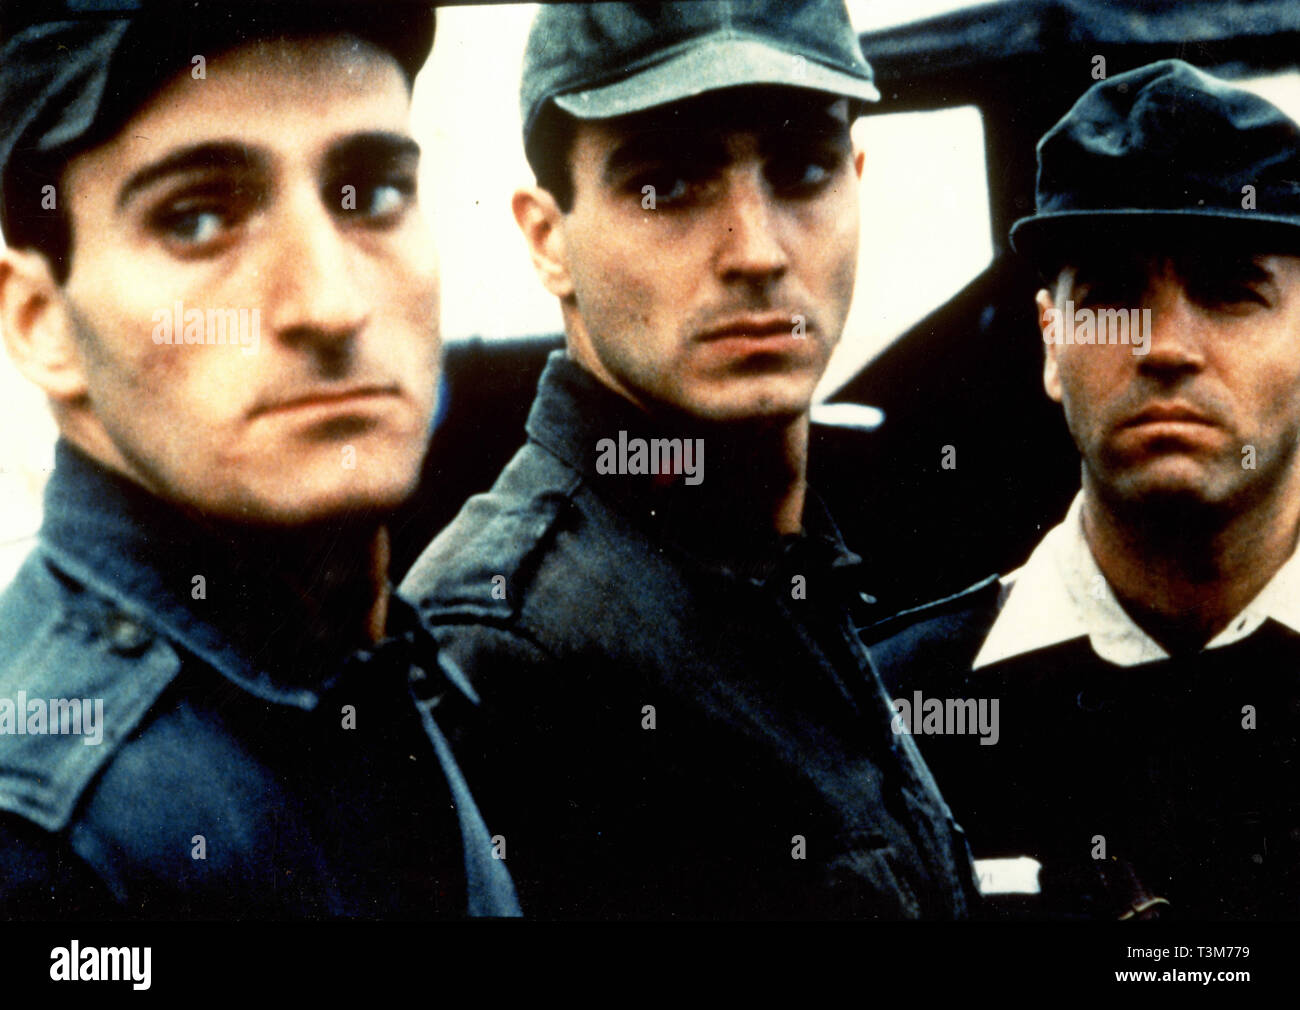 Daniele Liotti in the movie Bajo bandera, 1997 Stock Photo